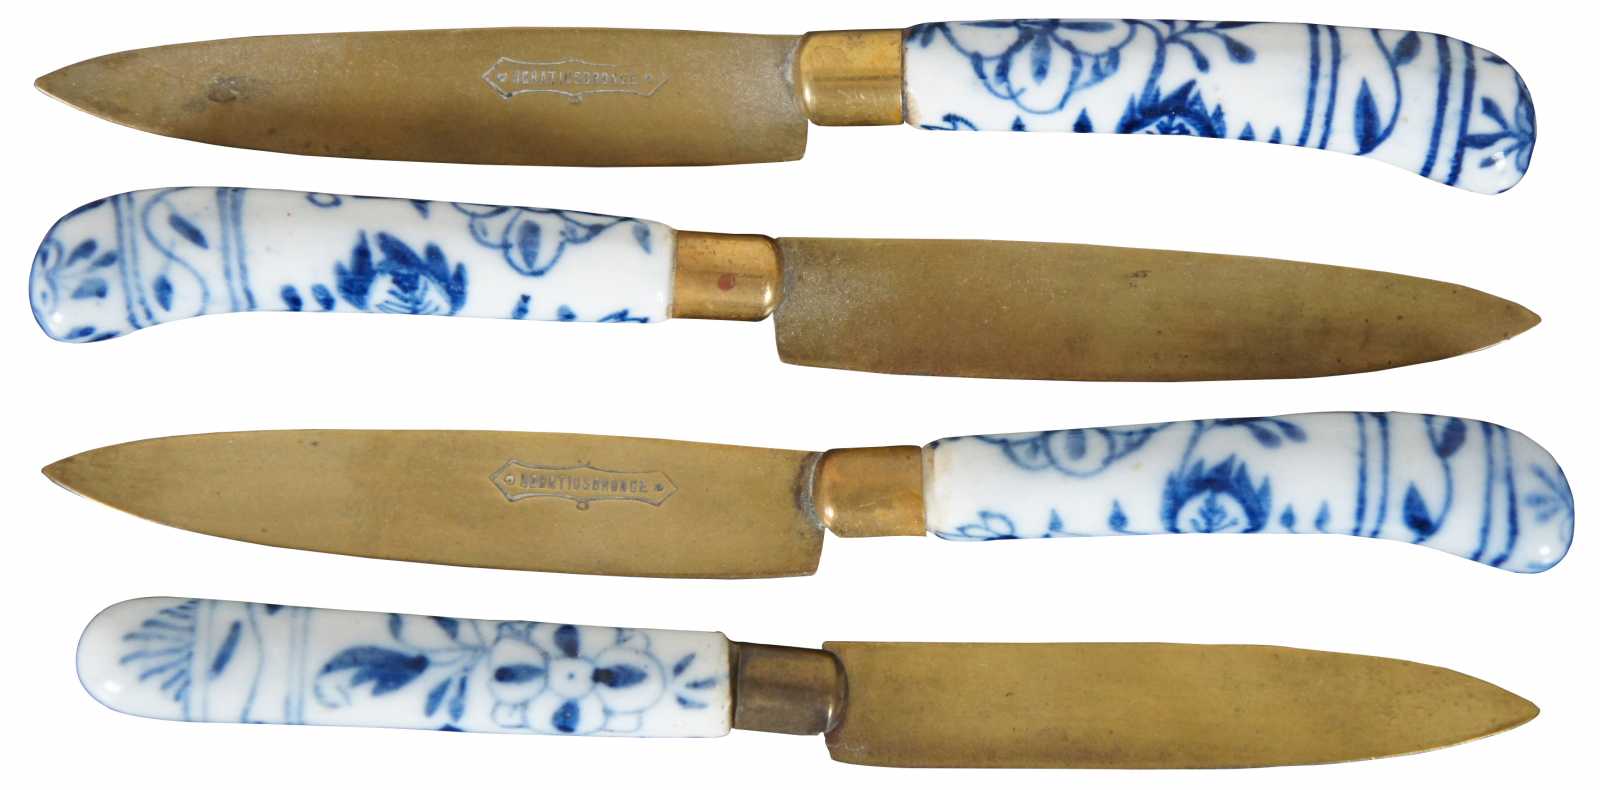 Vintage Meissen Porcelain Fruit Knives, Uchatius Bronze, German Fruit Knives,  Vintage Cutlery, Meissen Porcelain, Vintage Brass Knives 